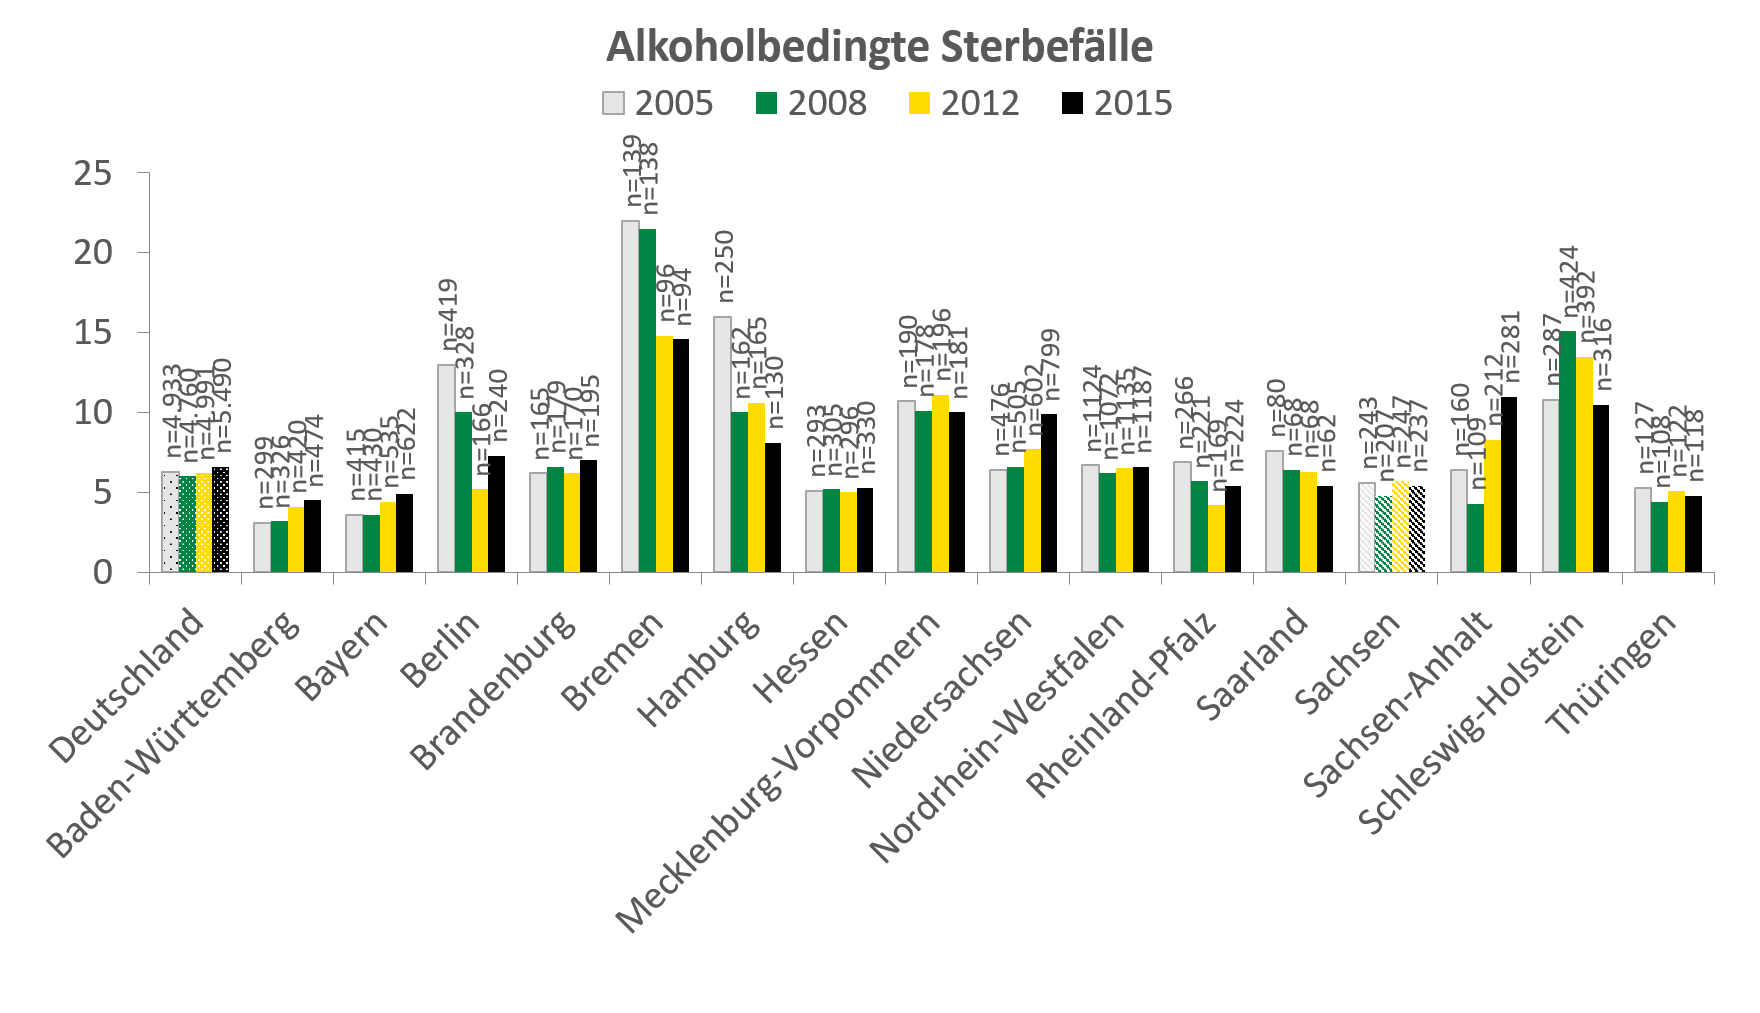 In Deutschland waren im Jahr 2015 etwa 6 alkoholbedingte Sterbefälle je 100.000 Einwohner zu verzeichnen. Die meisten Sterbefälle gab es mit über 13 im Bundesland Bremen, von 2008 auf 2012 hat die Zahl allerdings um mehr als 7 Fälle abgenommen. In Sachsen war 2015 die Zahl an Fällen mit einem Wert von etwas über 5 noch unter dem Durchschnitt der Bundesländer.